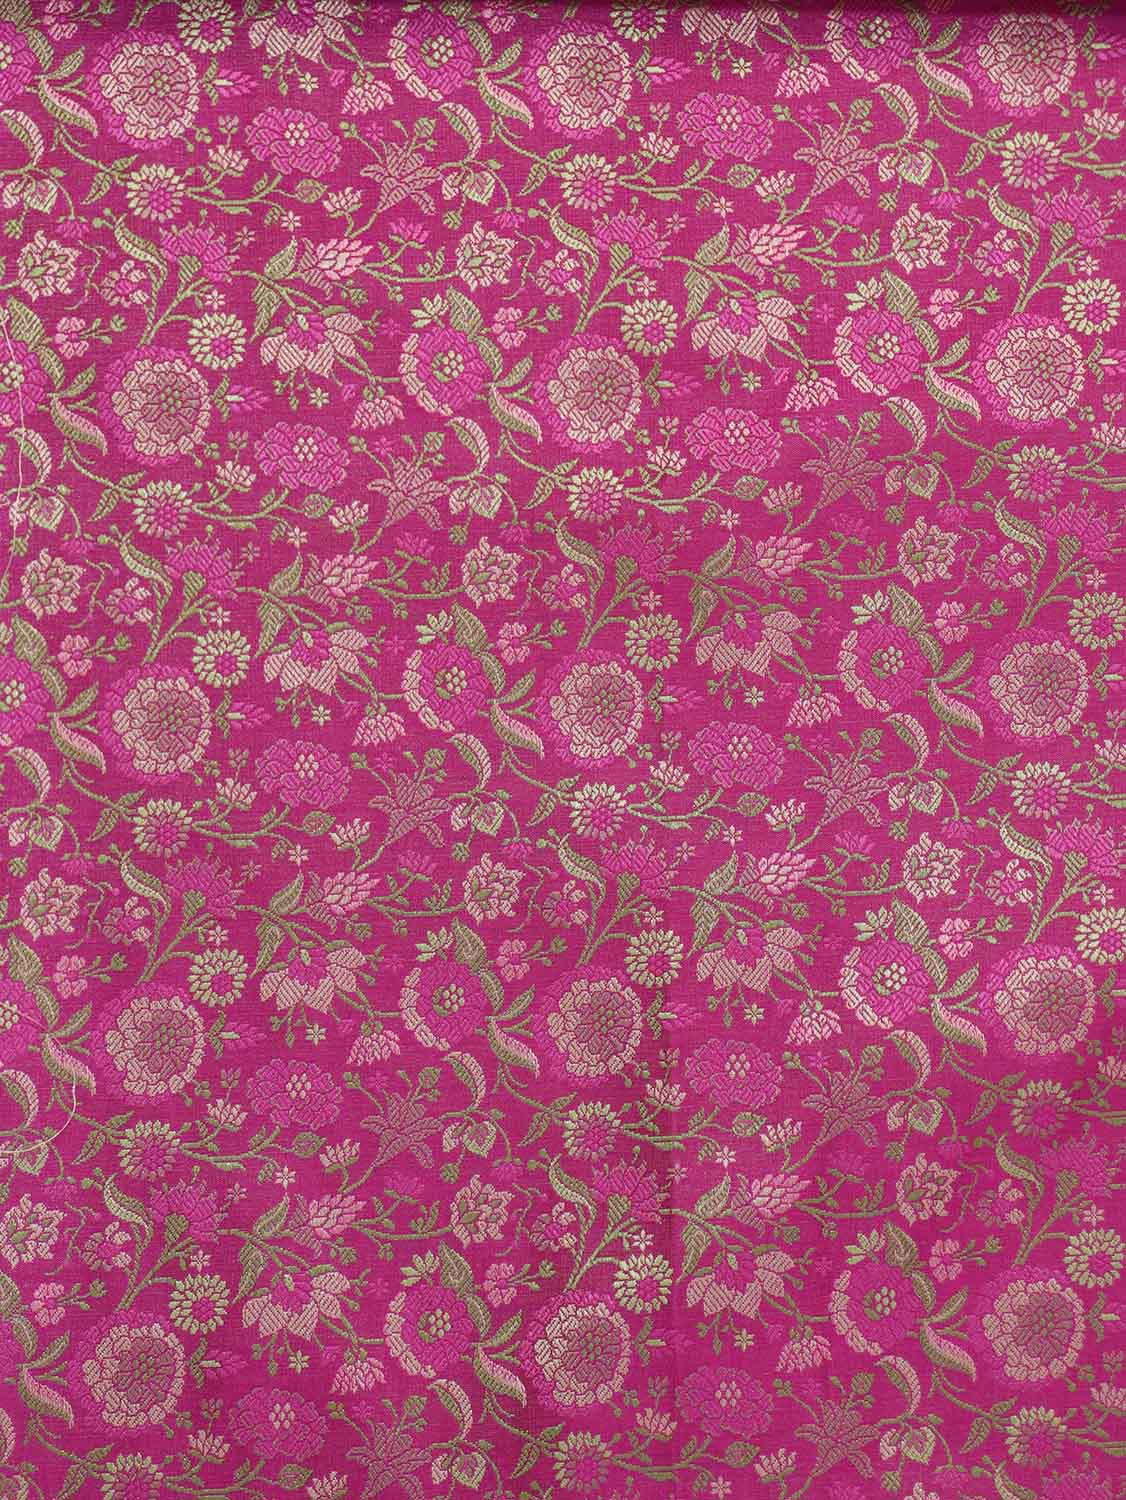 Exquisite Pink Banarasi Silk Tanchui Jamawar Brocade Fabric - 1 Mtr Length - Luxurion World